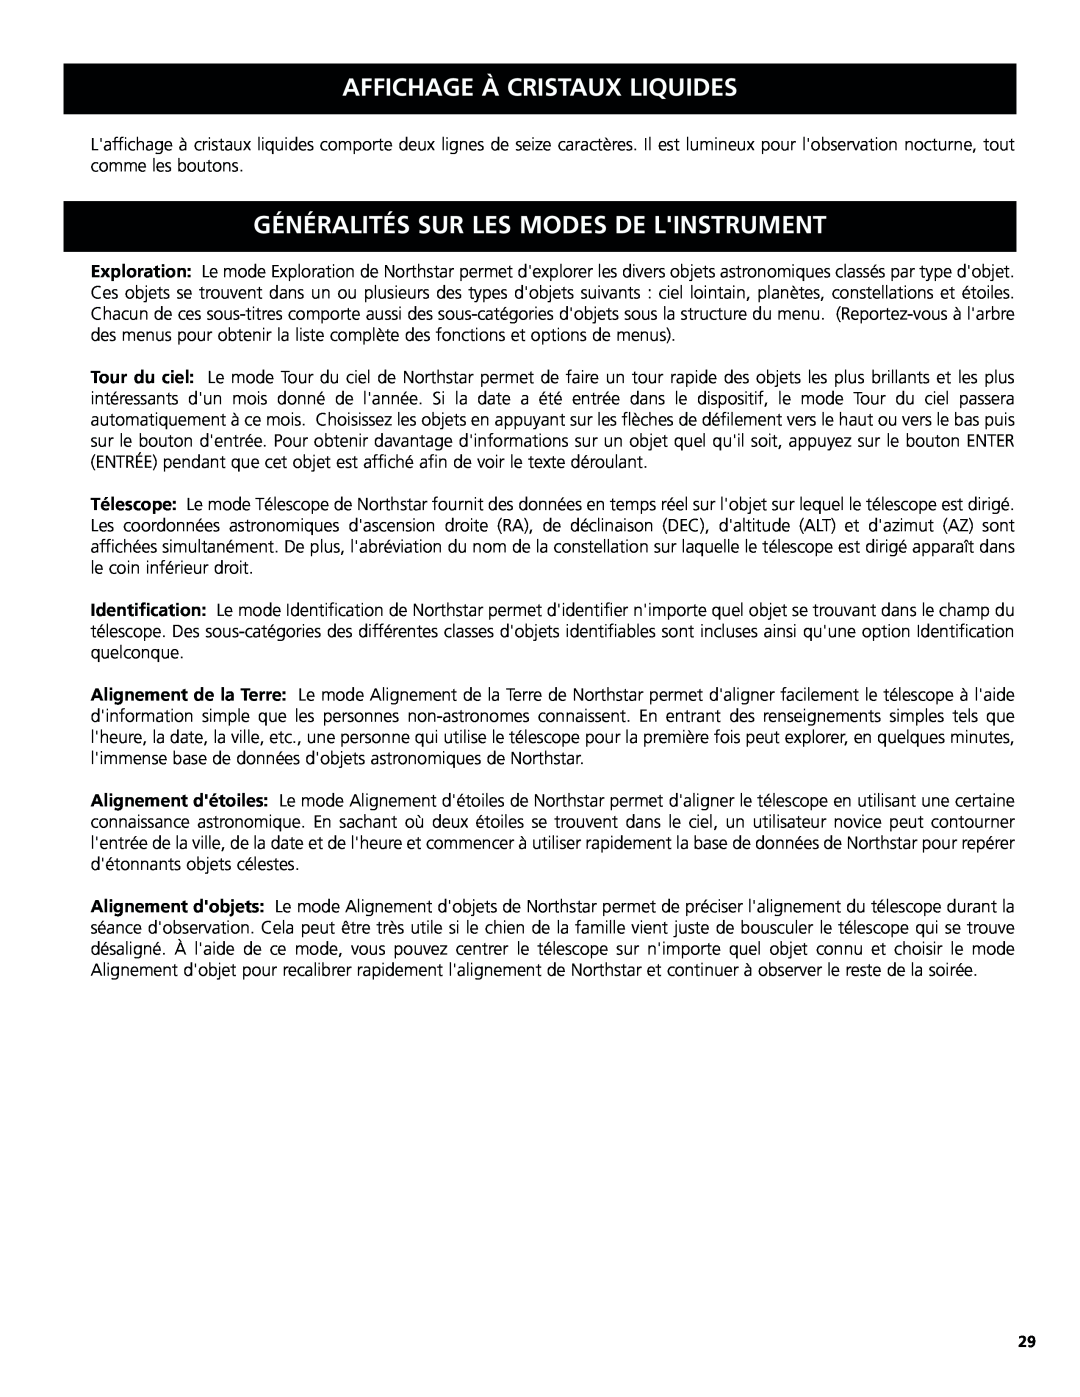 Bushnell 78-8831, 78-8846 instruction manual Affichage À Cristaux Liquides, Généralités Sur Les Modes De Linstrument 